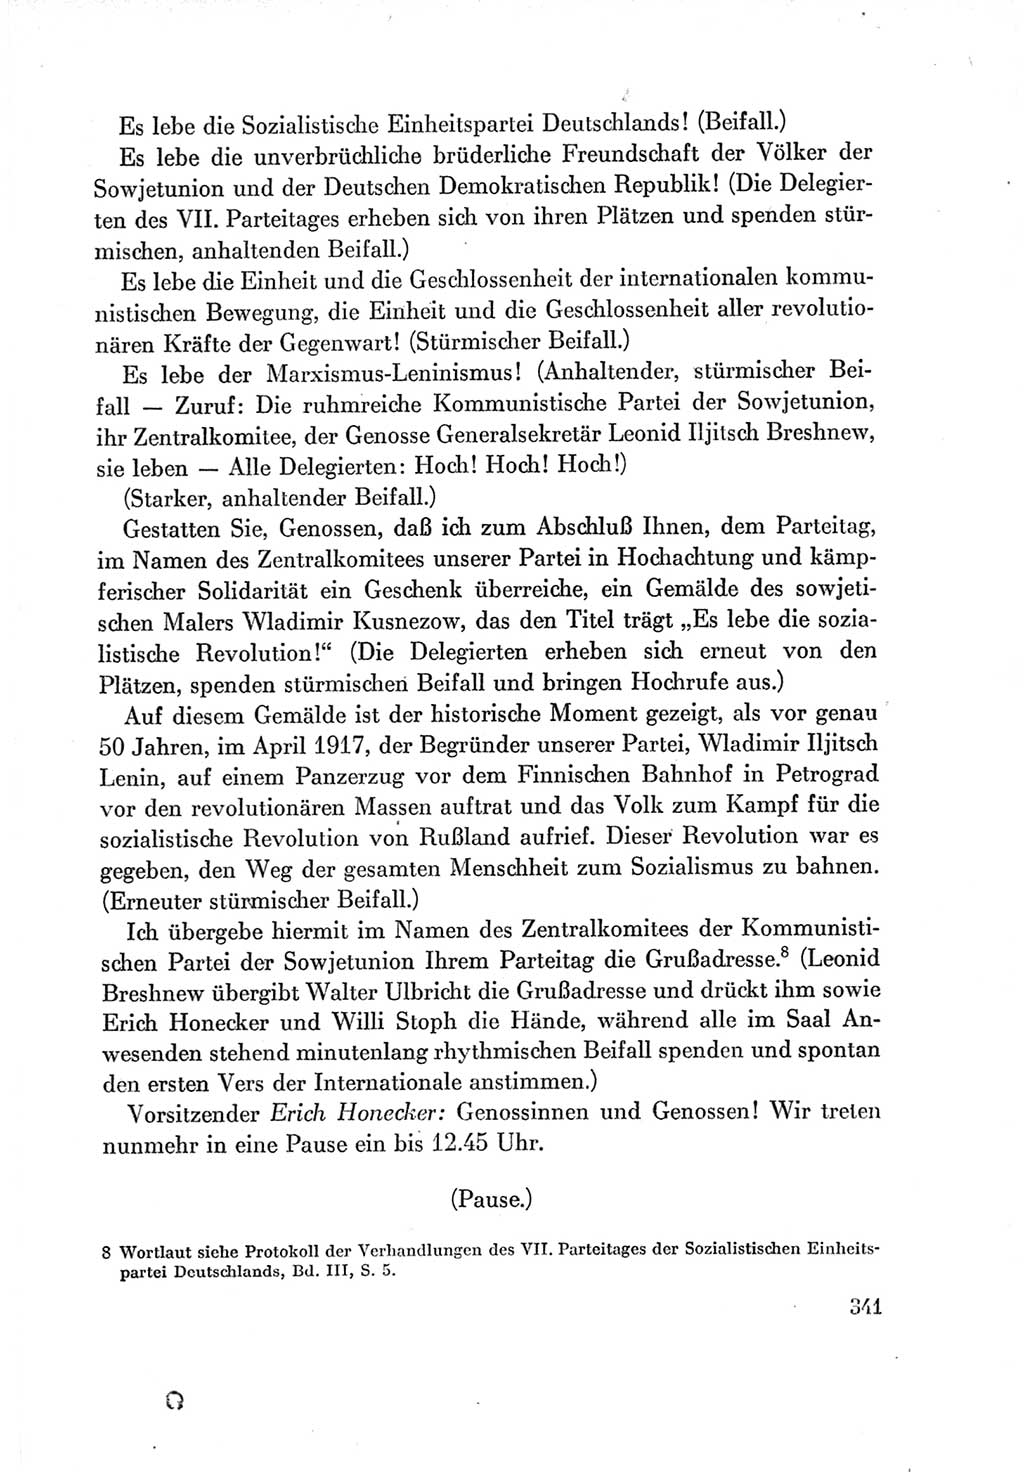 Protokoll der Verhandlungen des Ⅶ. Parteitages der Sozialistischen Einheitspartei Deutschlands (SED) [Deutsche Demokratische Republik (DDR)] 1967, Band Ⅰ, Seite 341 (Prot. Verh. Ⅶ. PT SED DDR 1967, Bd. Ⅰ, S. 341)